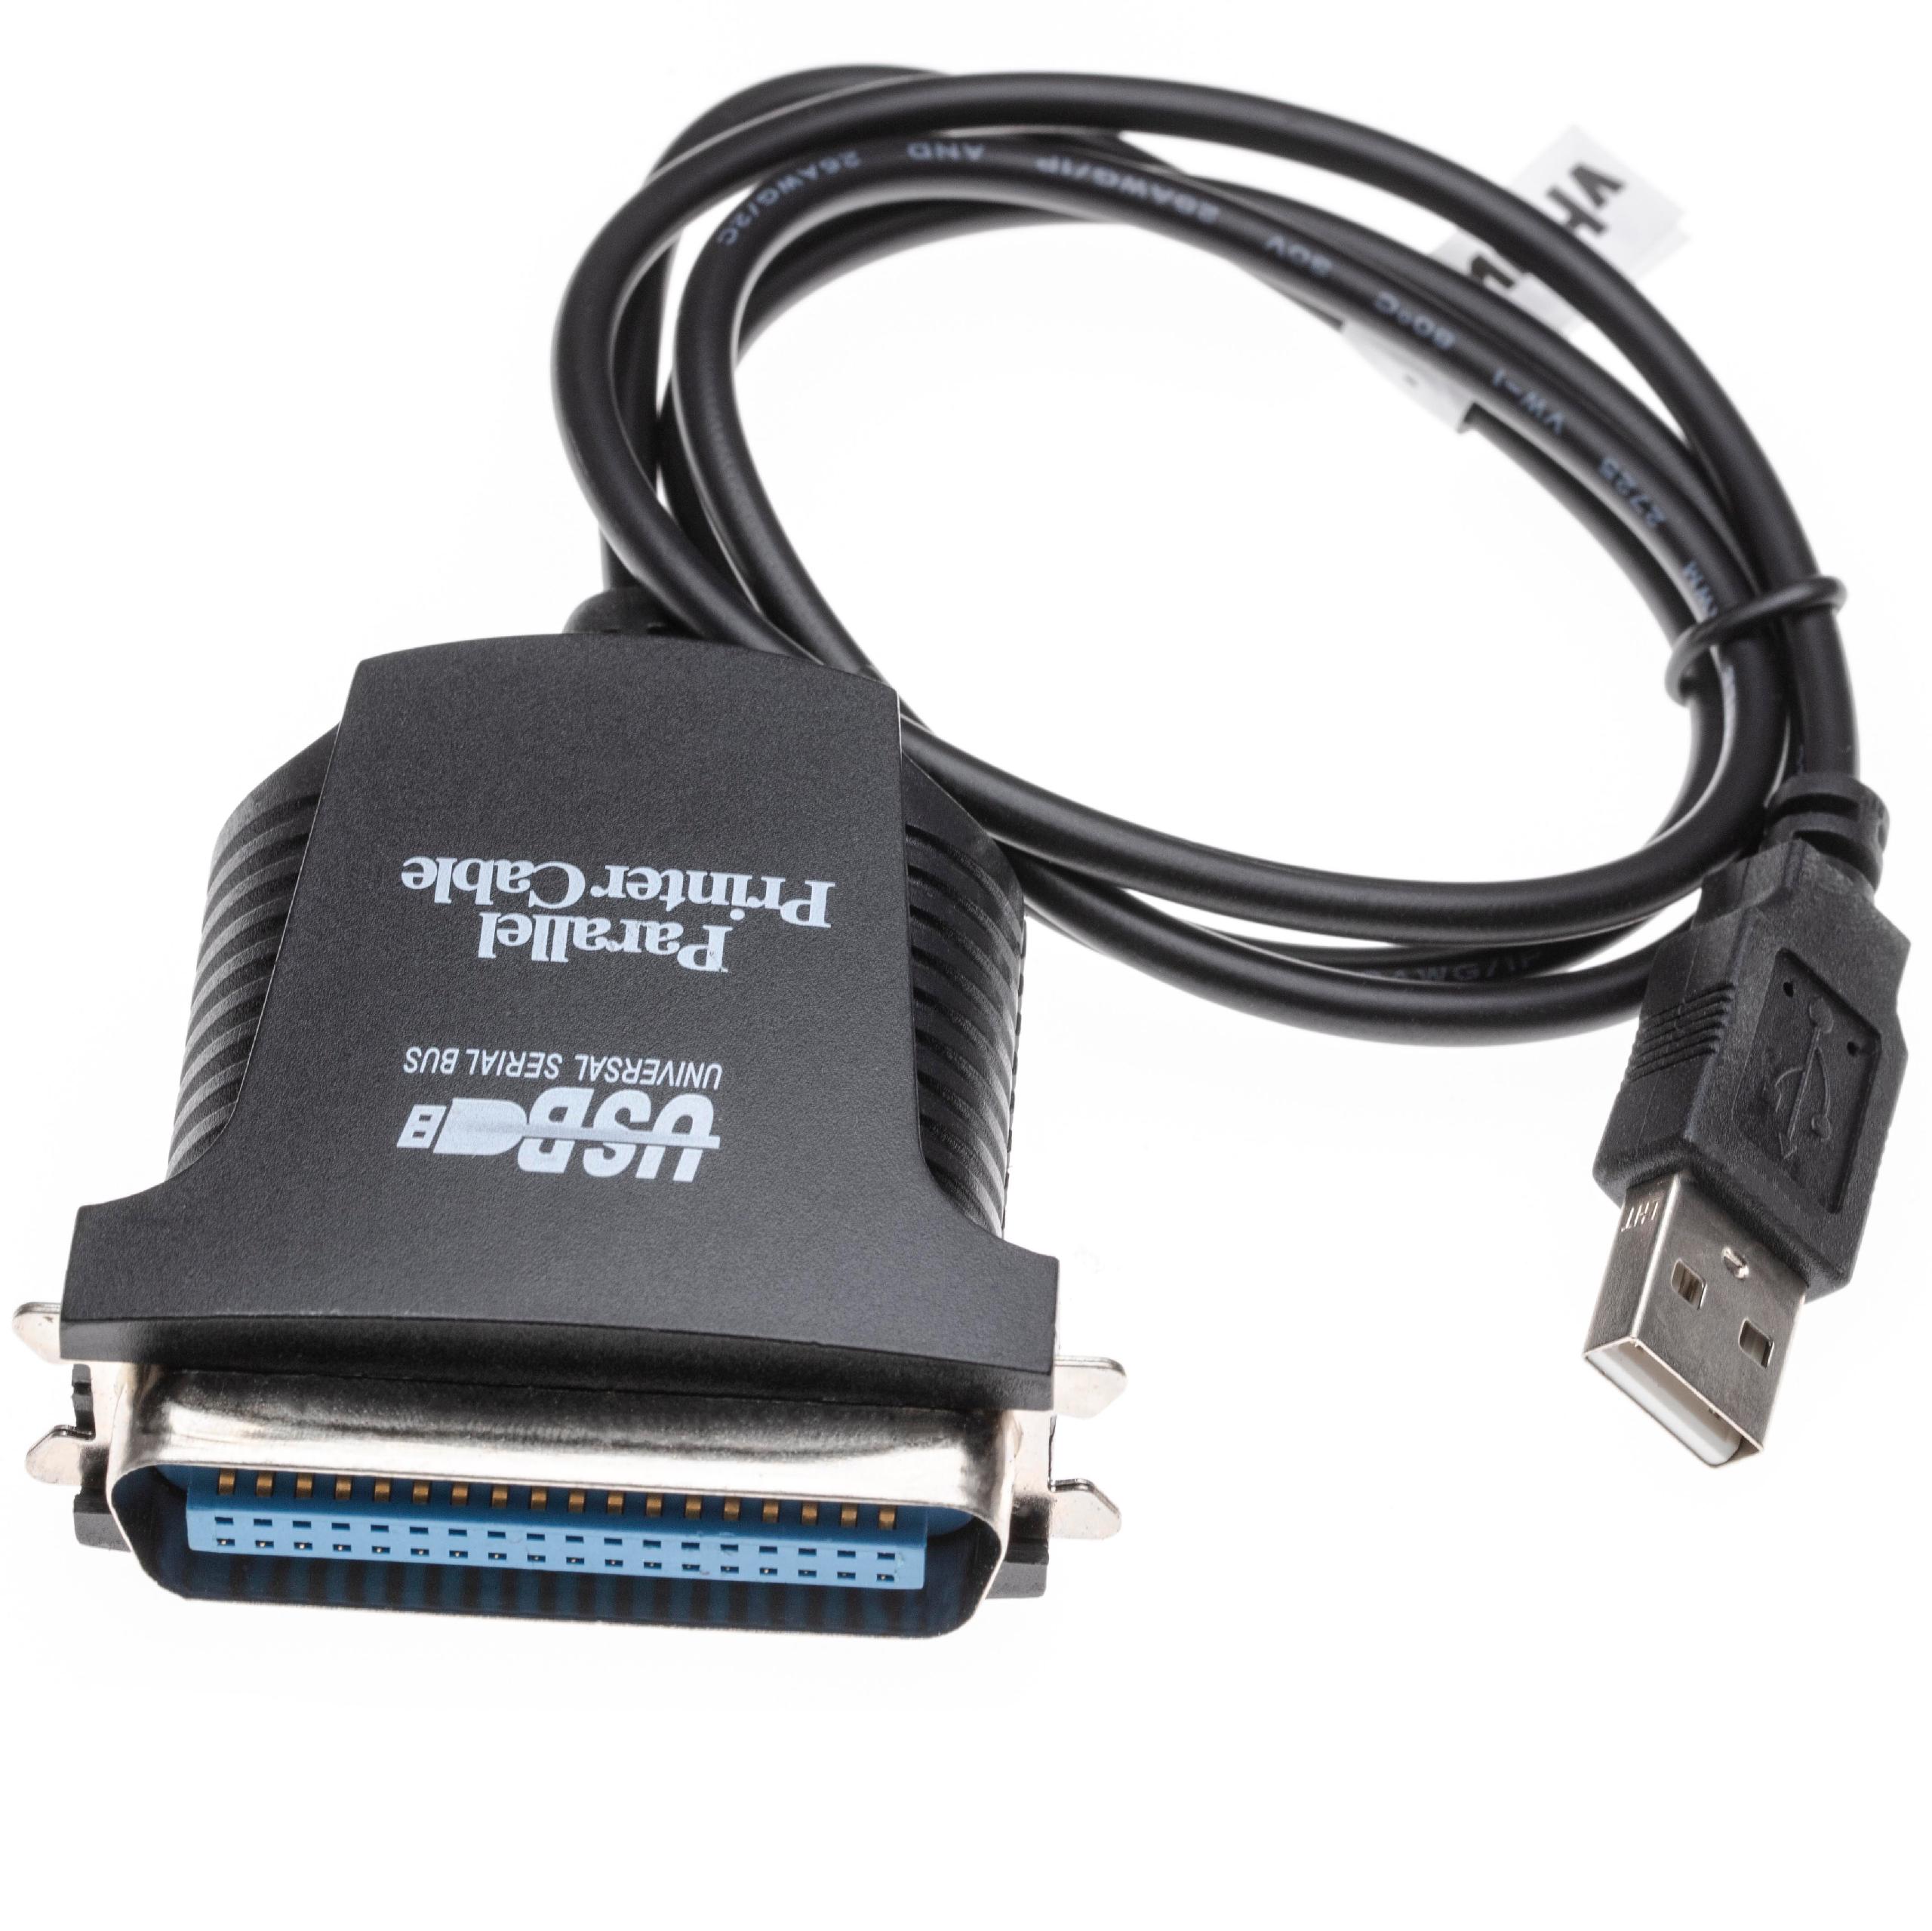 USB A zu 36 Pin Stecker Adapterkabel für Drucker, Scanner, Fax - USB Anschlusskabel